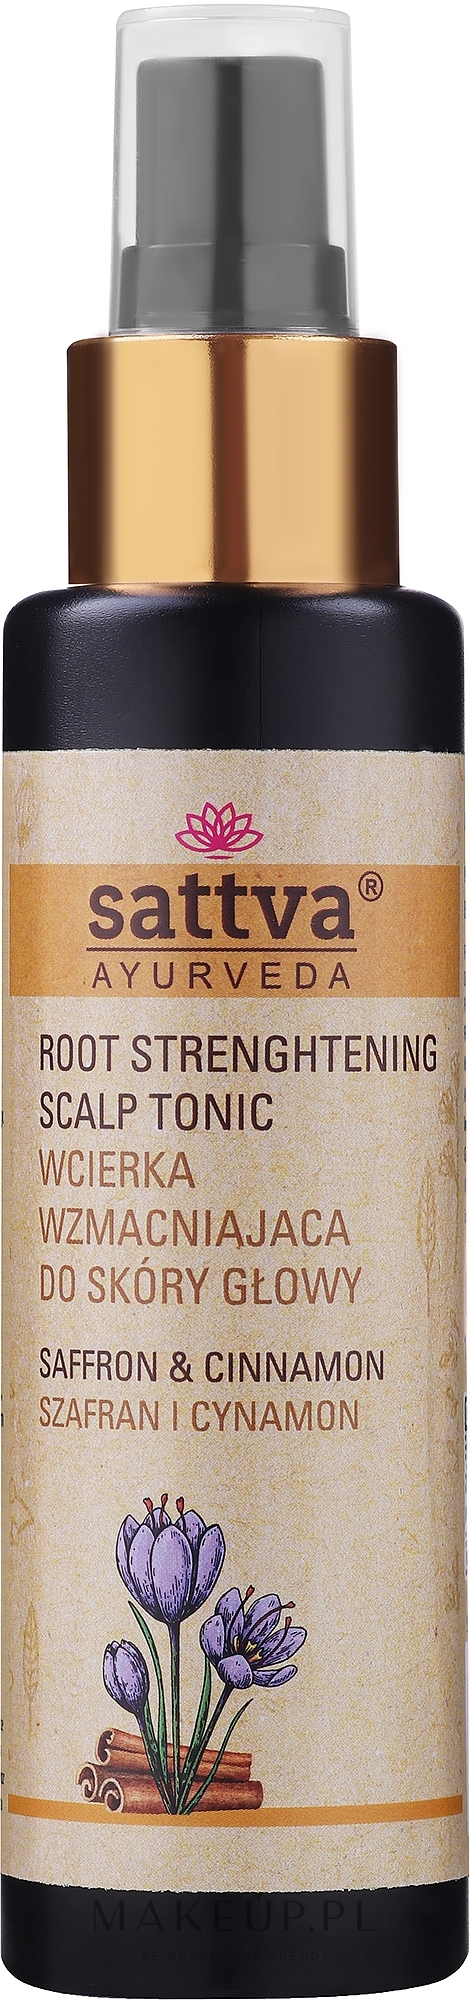 Wcierka wzmacniająca do skóry głowy - Sattva Ayurveda — Zdjęcie 100 ml